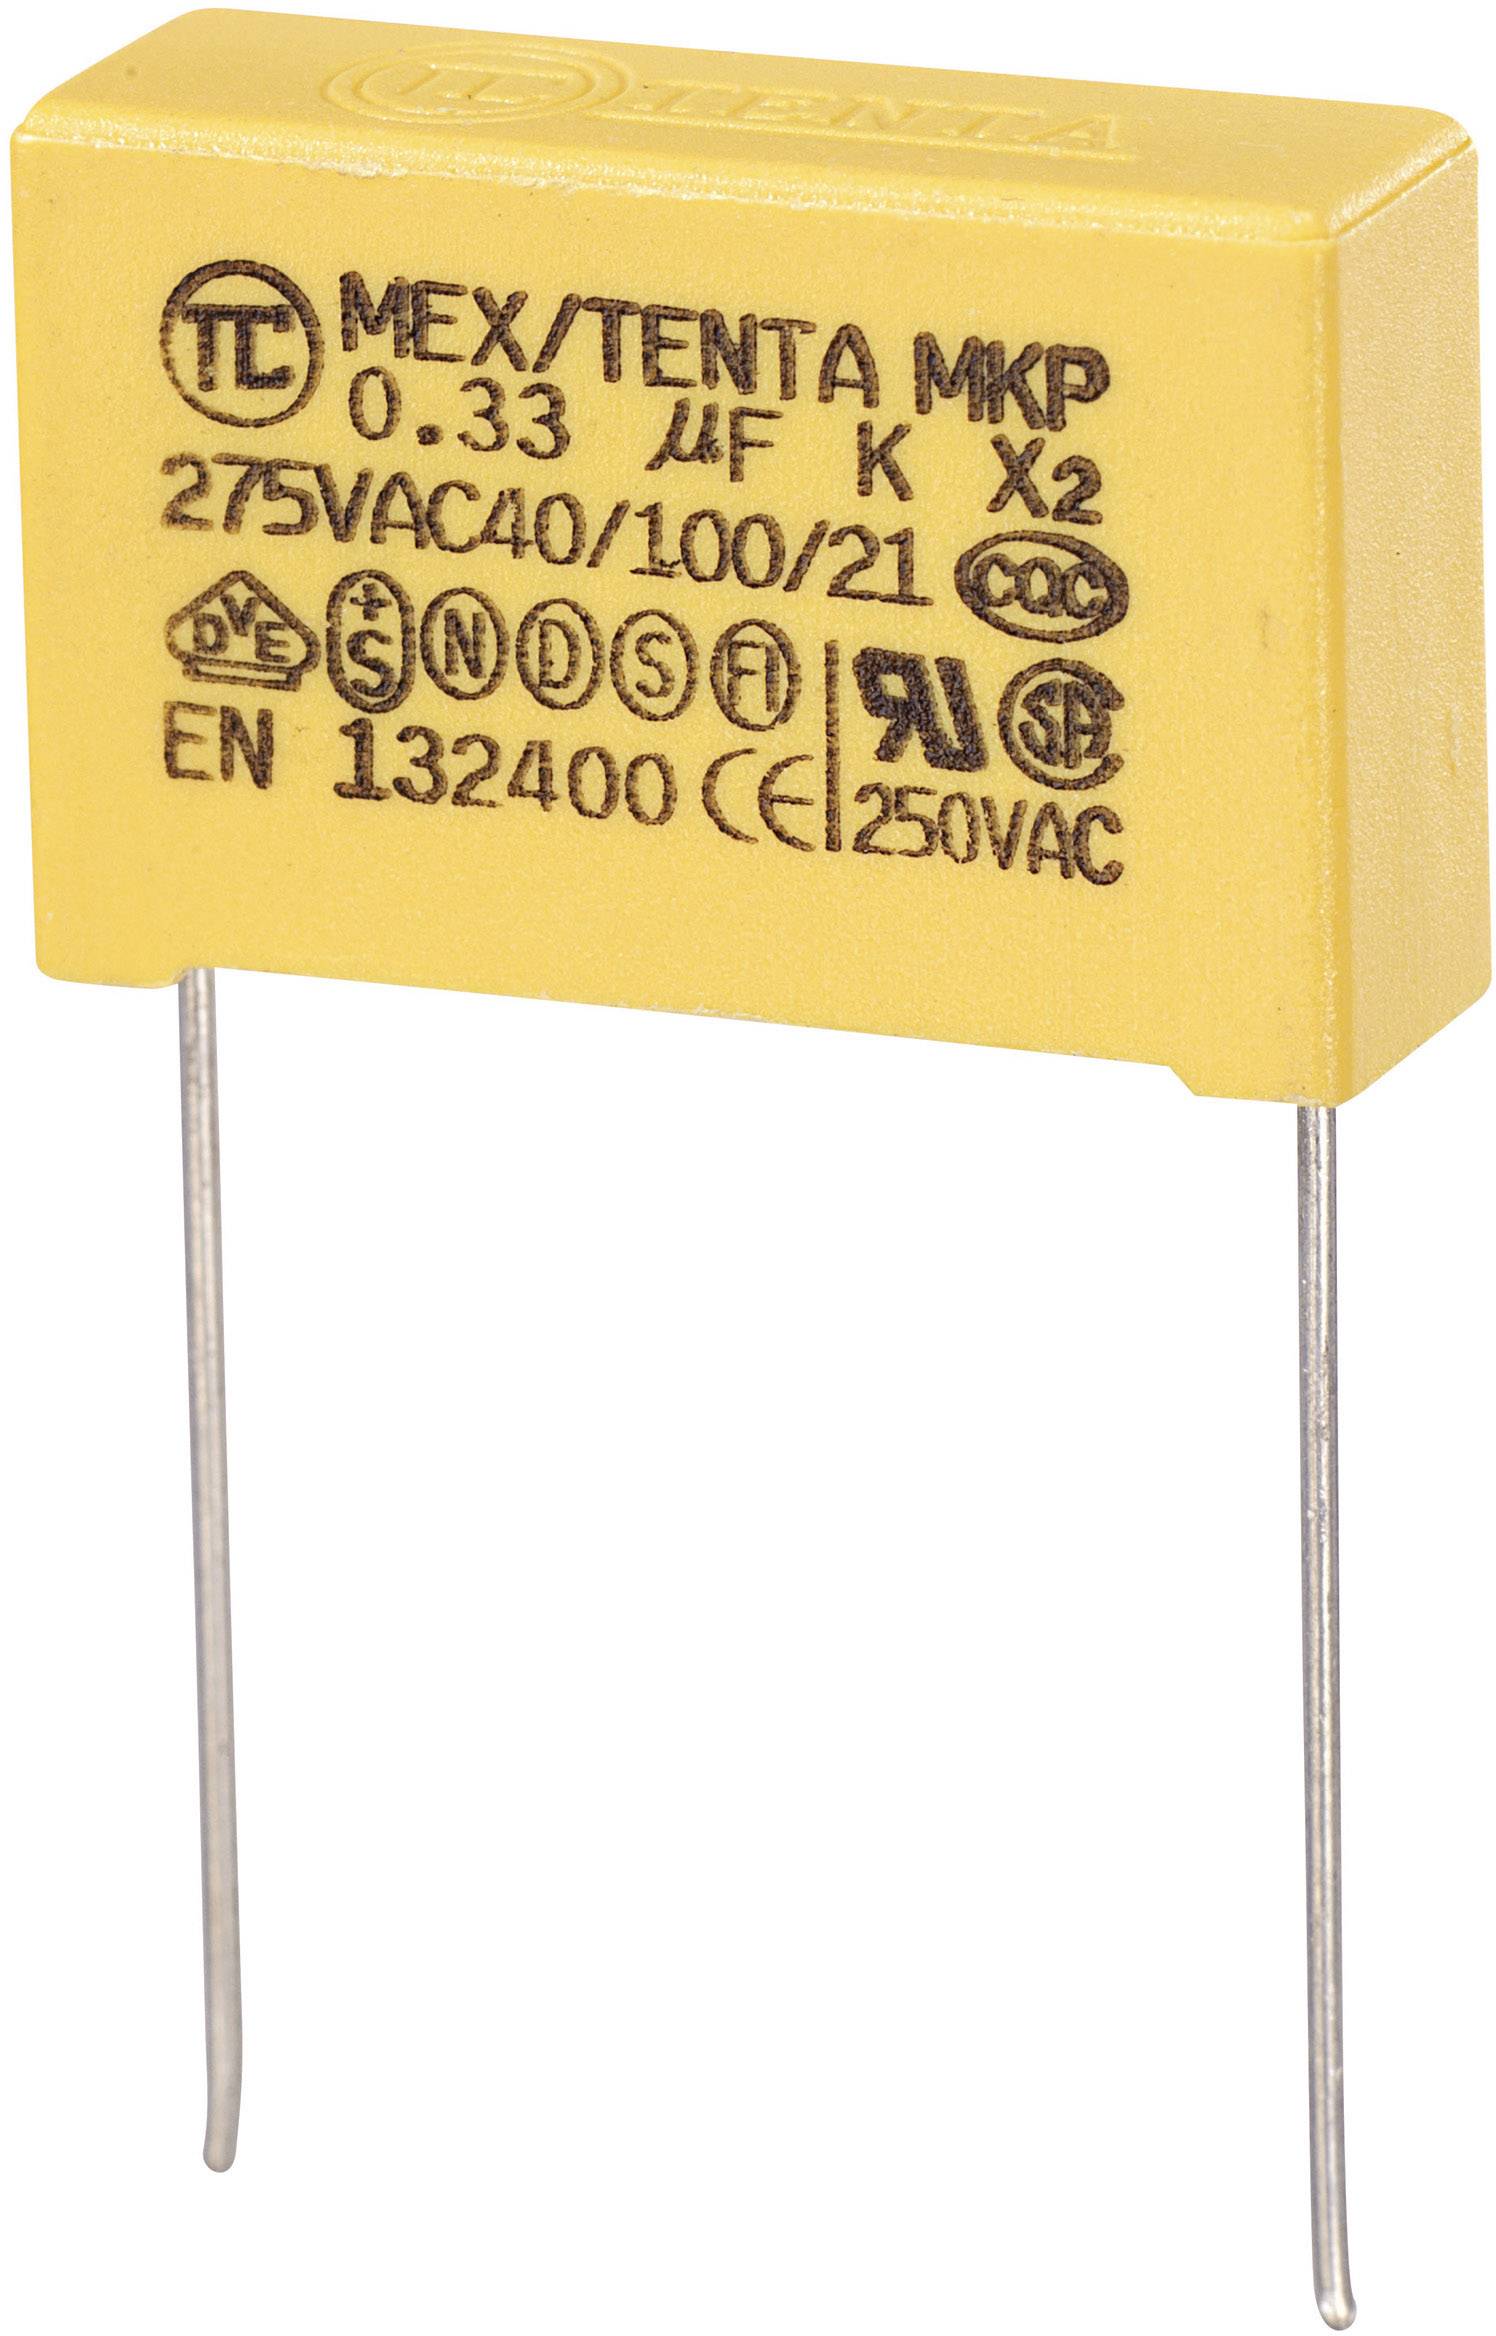 MKP-X2 1 pc(s) suppression capacitor Radial lead 0.33 µF 275 V AC % 22.5 mm (L x W x H) 26.5 8.5 x mm | Conrad.com